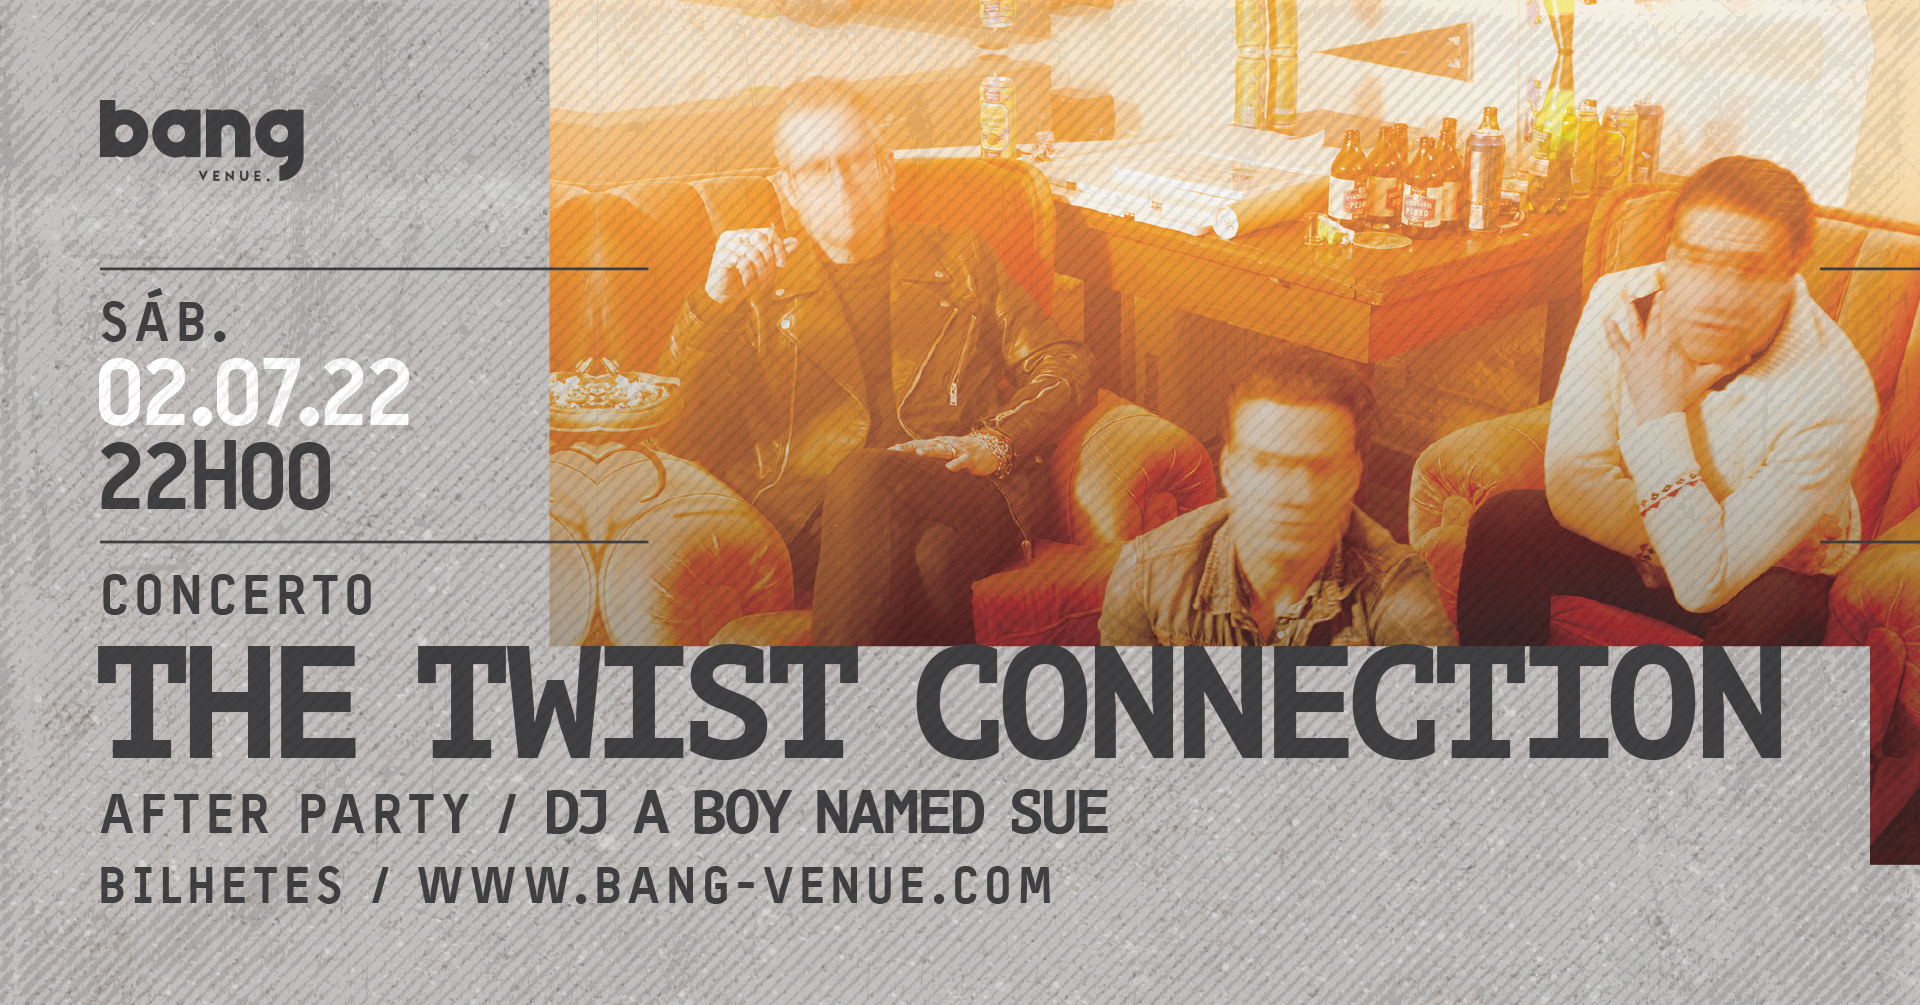 Concerto The Twist Connection + Dj a boy named Sue | Bang Venue